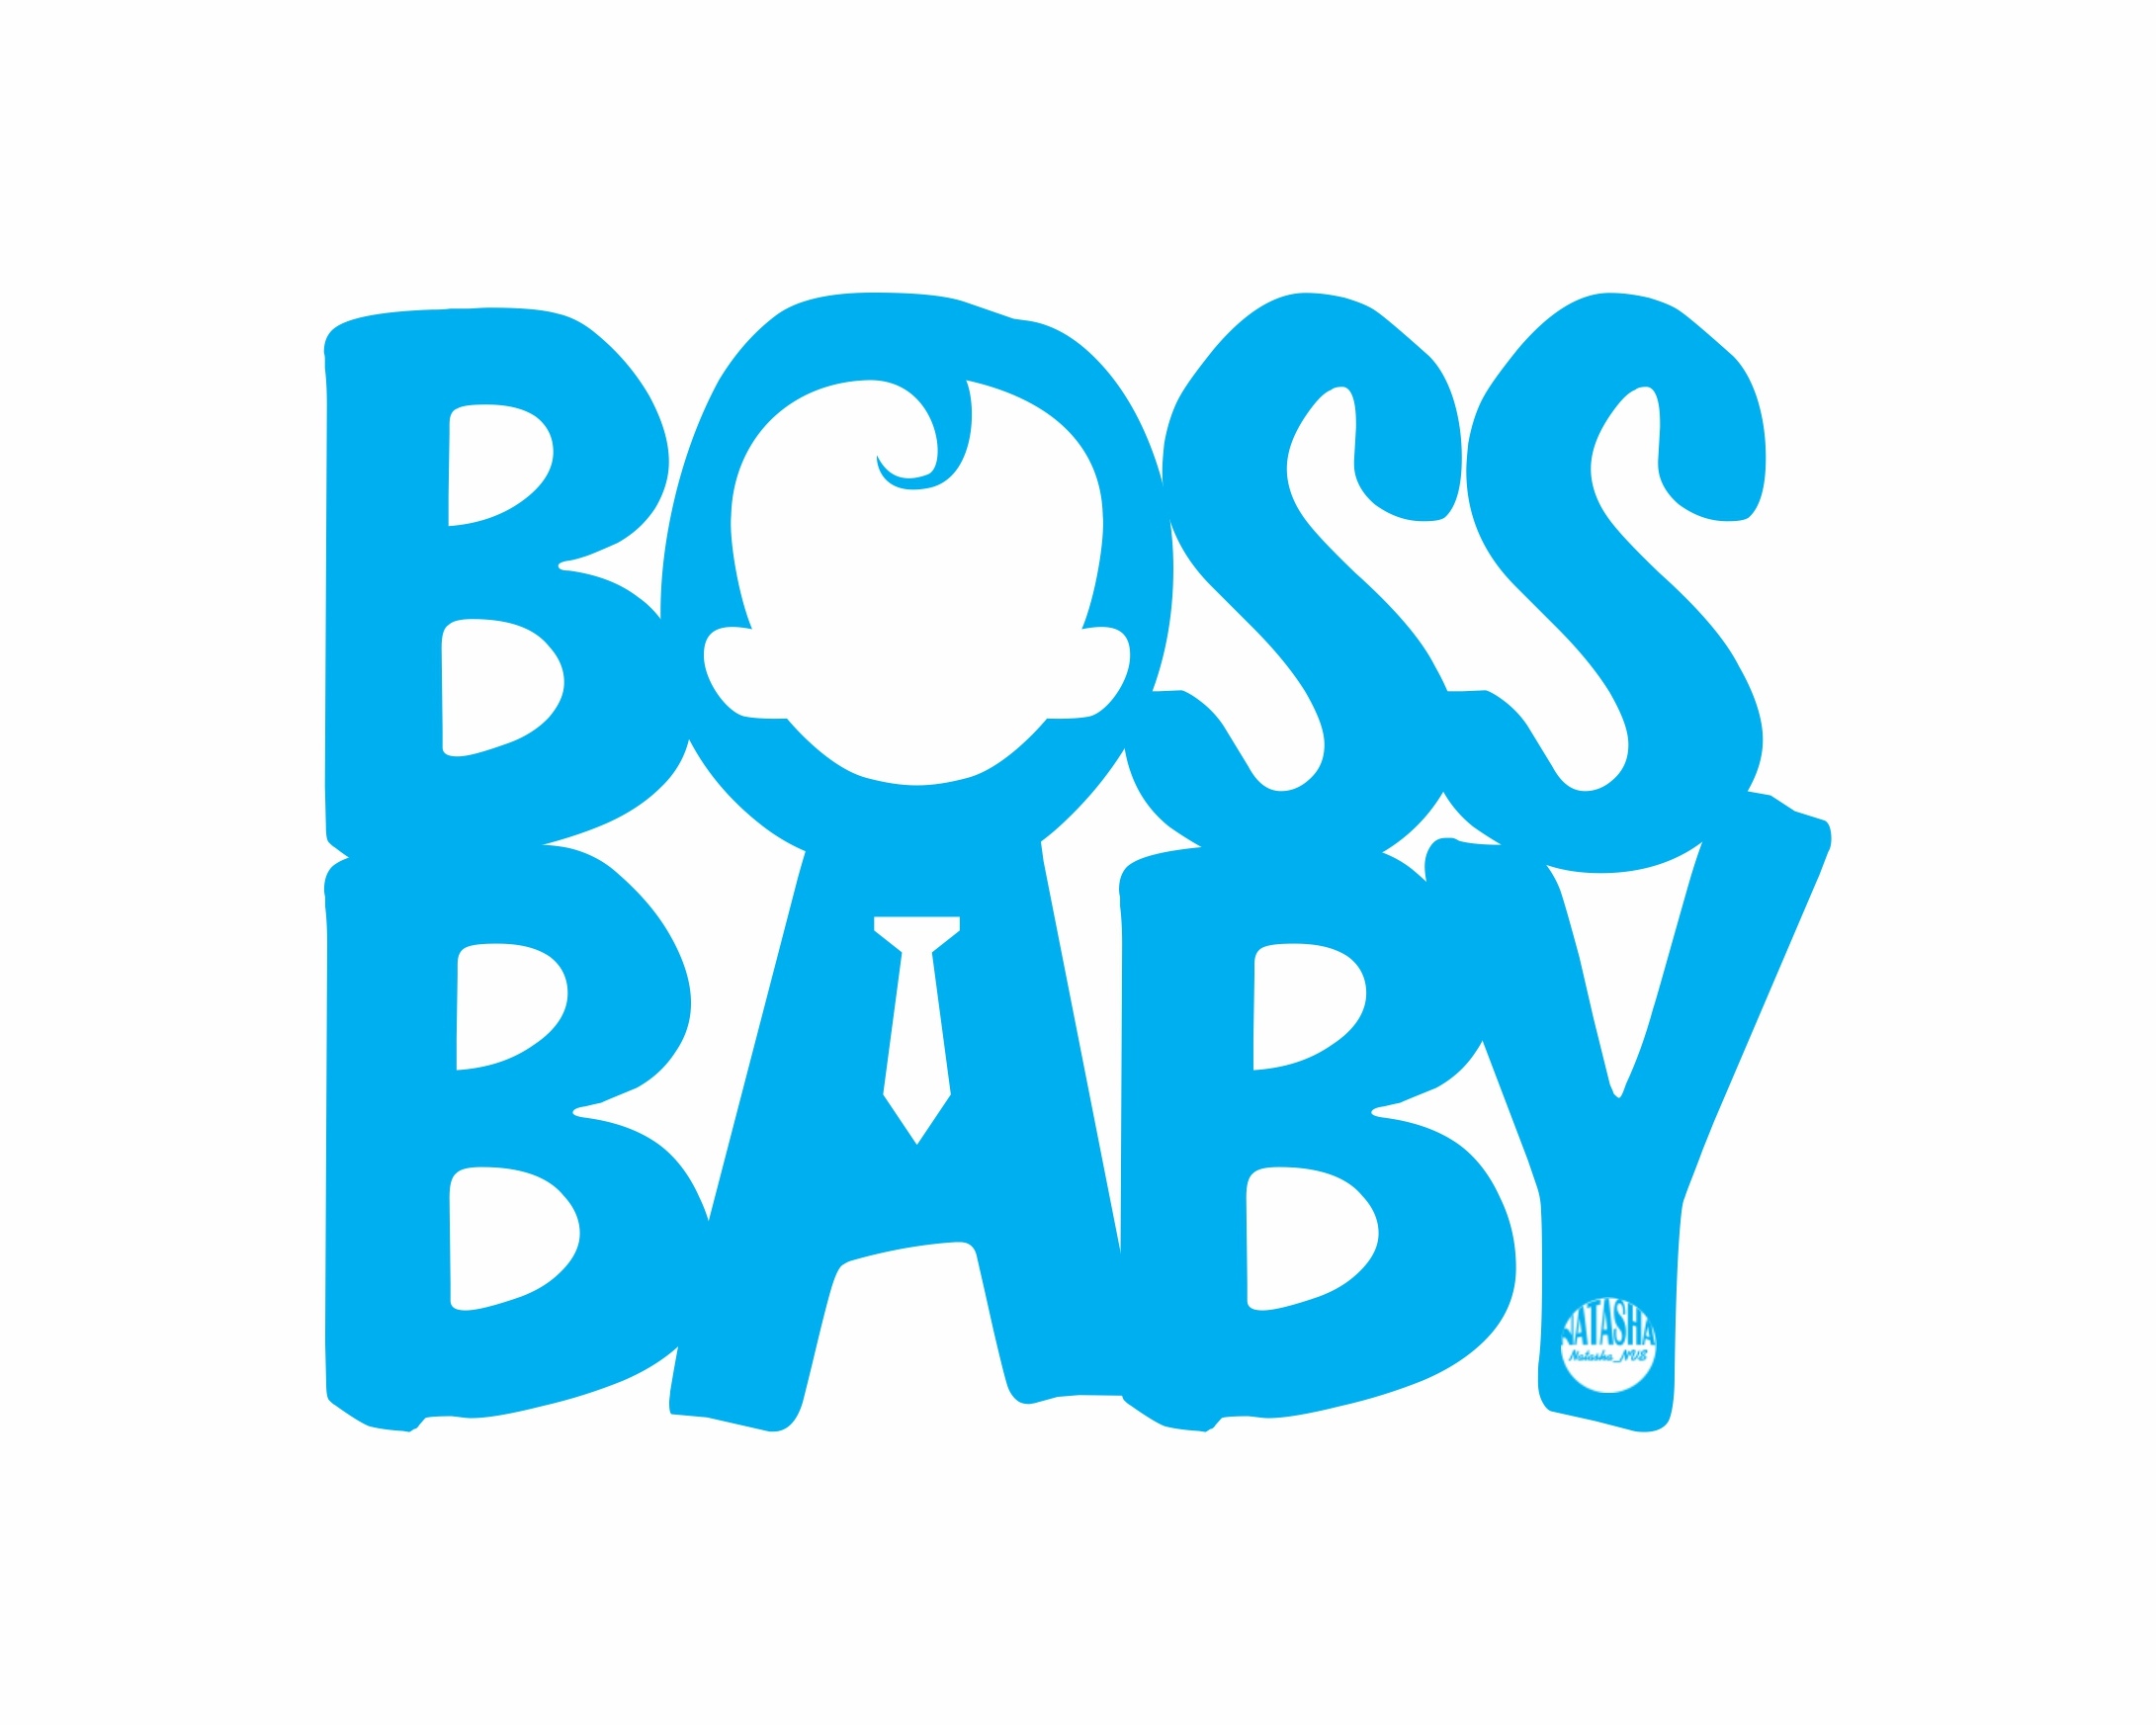 Der Boss-Baby-Aufkleber